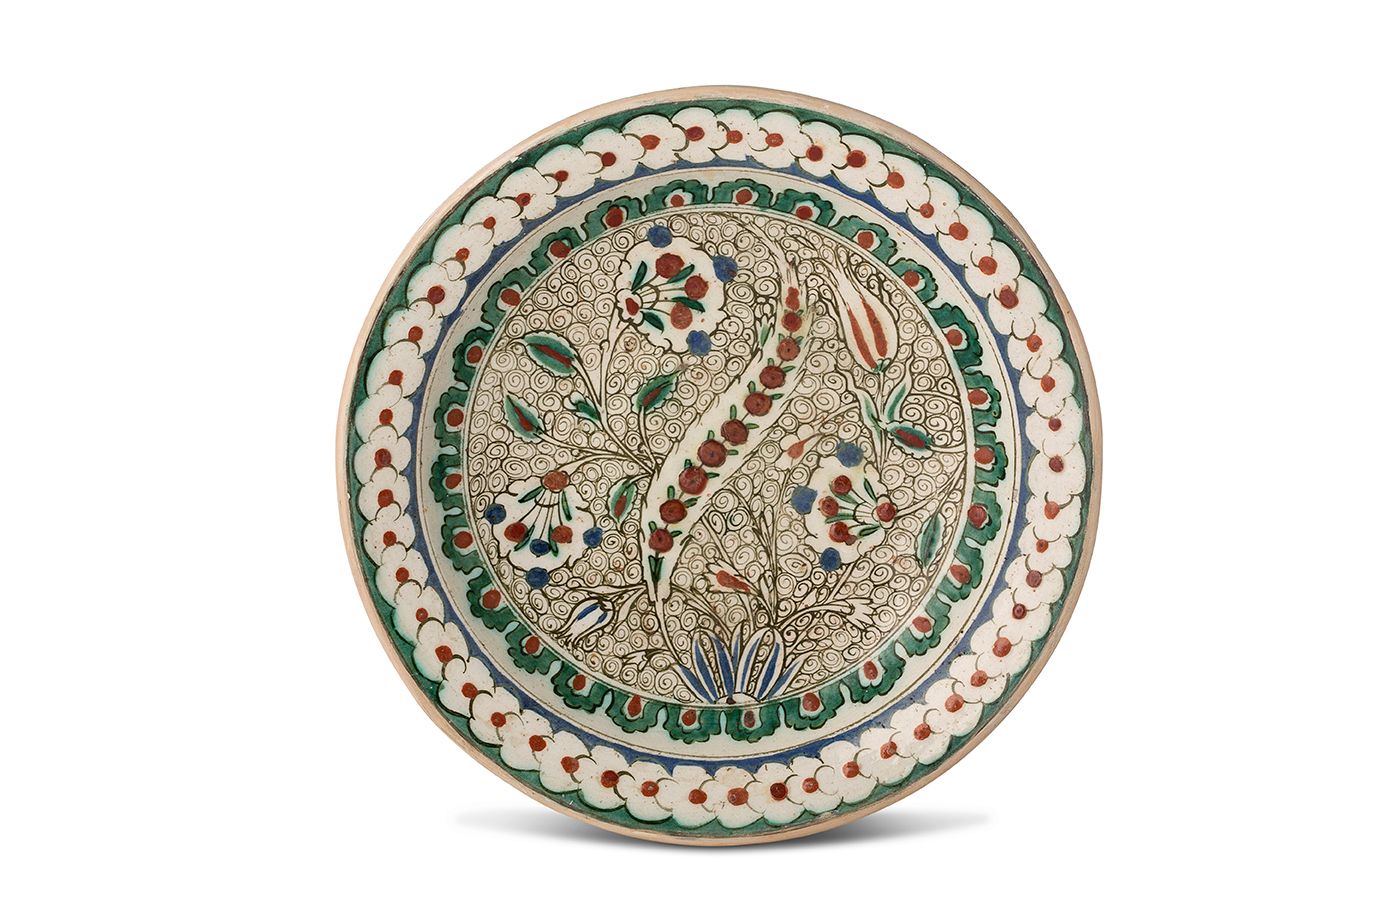 [IZNIK] 
一个硅质陶瓷 "tabak "盘，在白底上用多色和红色的滑石装饰着一个锯齿状的 "saz "手掌，周围是康乃馨和郁金香，有丰富的风格化的波浪框&hellip;